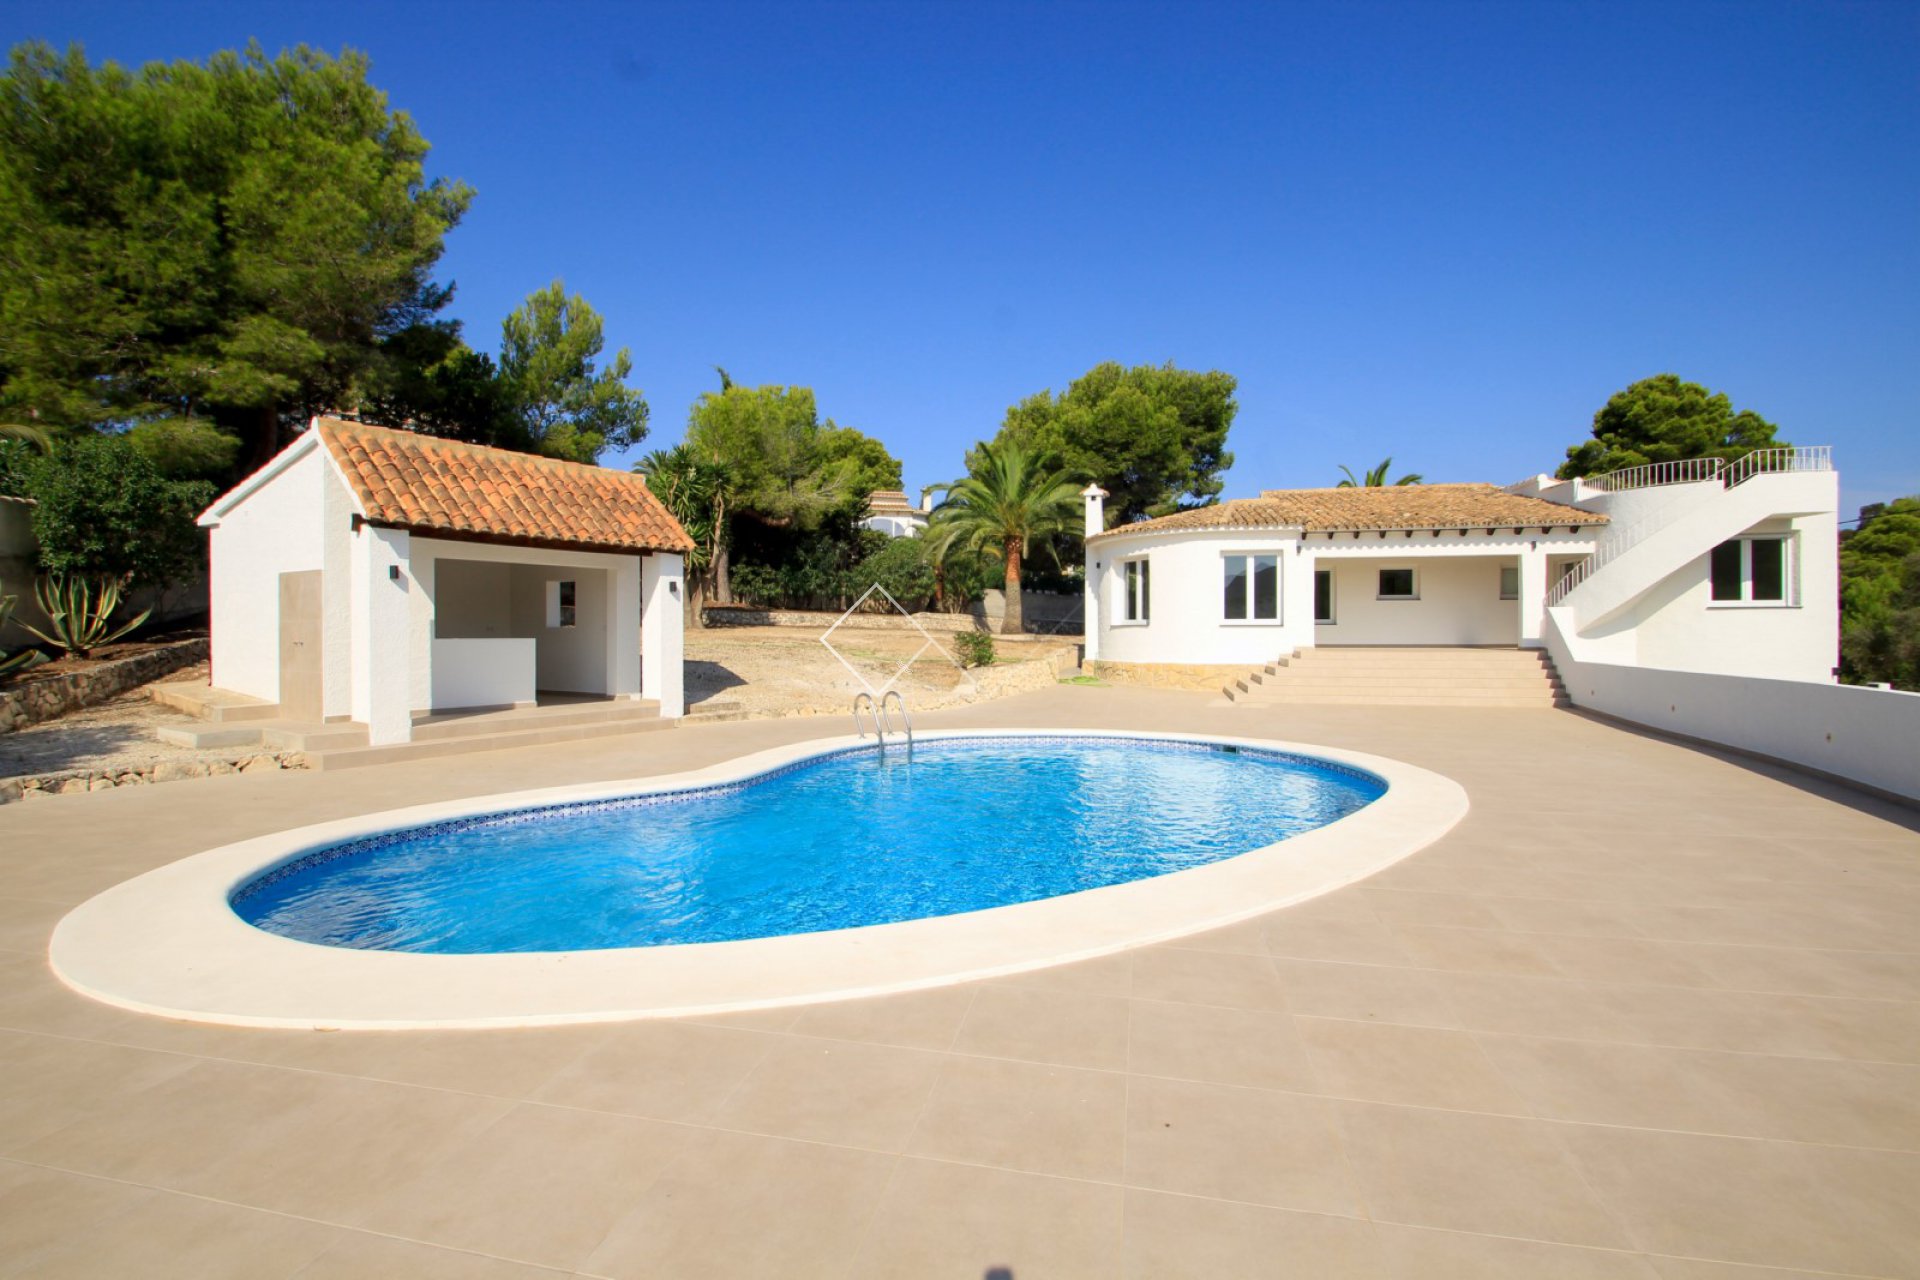 zwembad terras - Gerenoveerde villa te koop dichtbij Moraira dorp. Als nieuw!